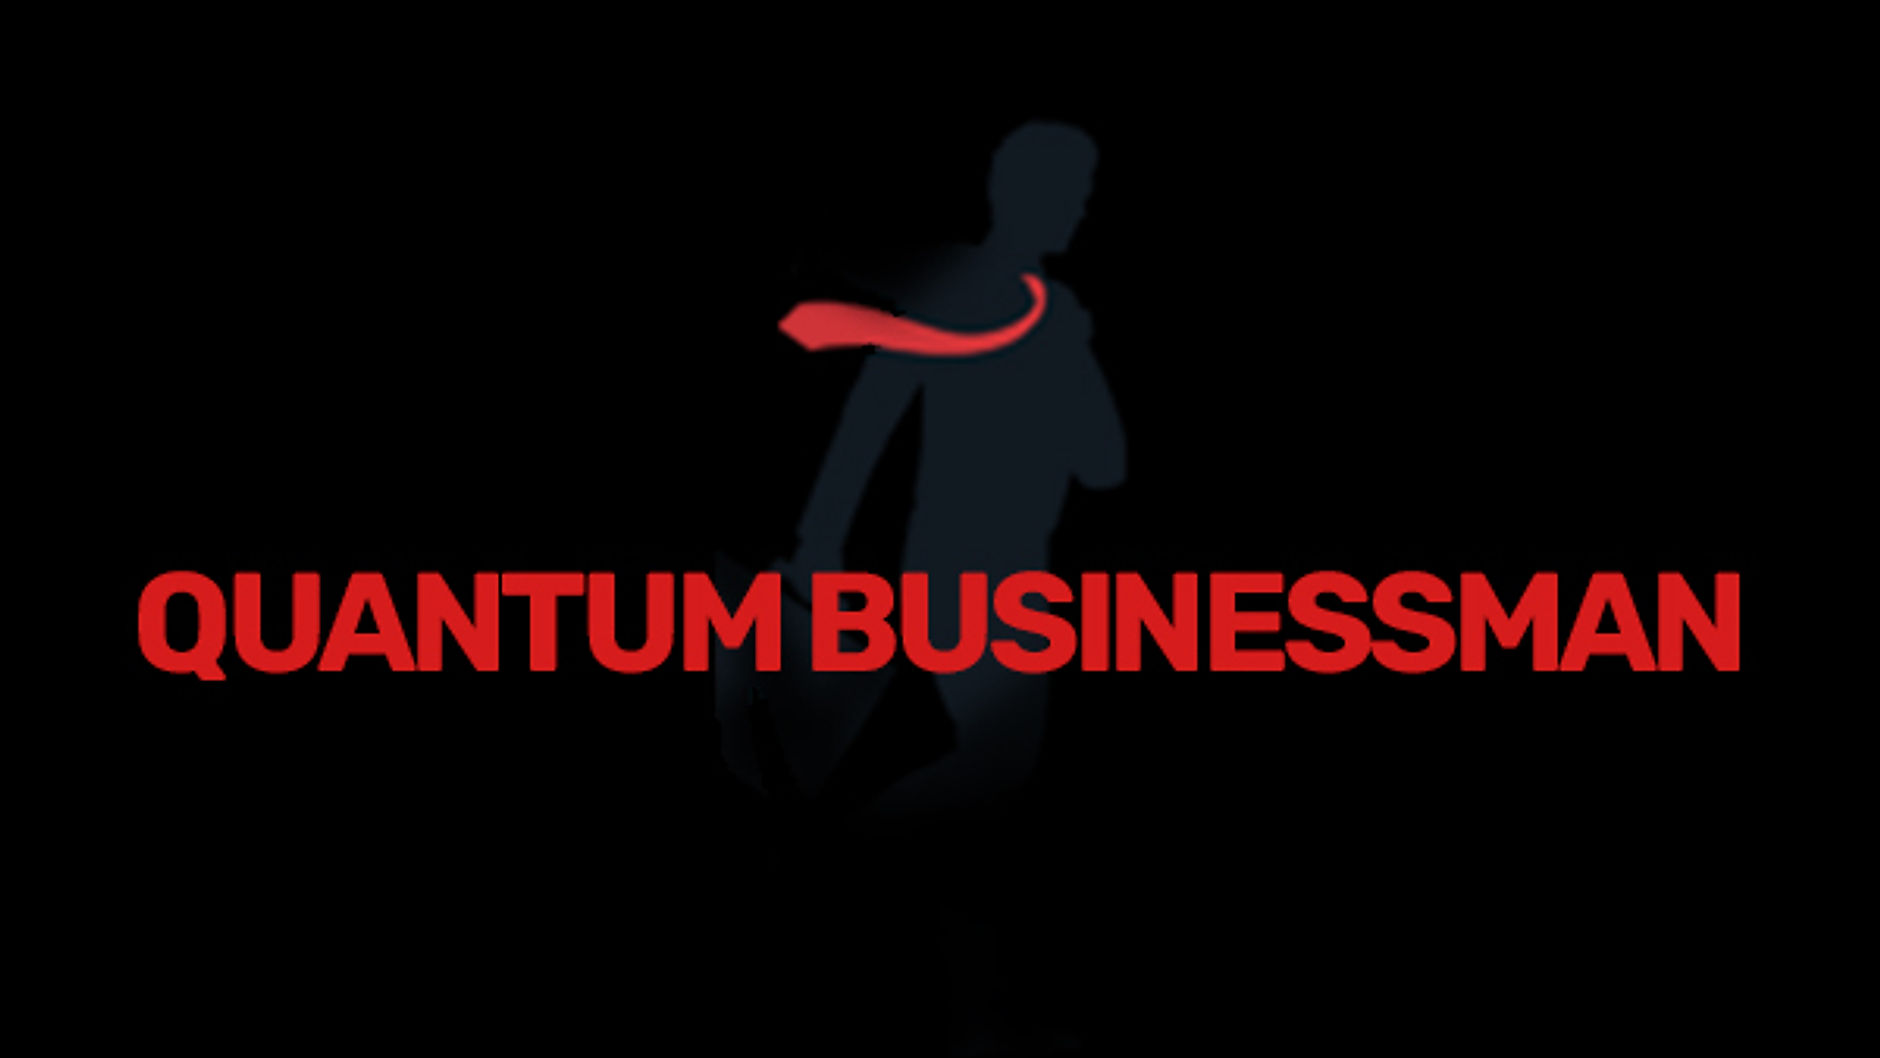 Quantum Businessman